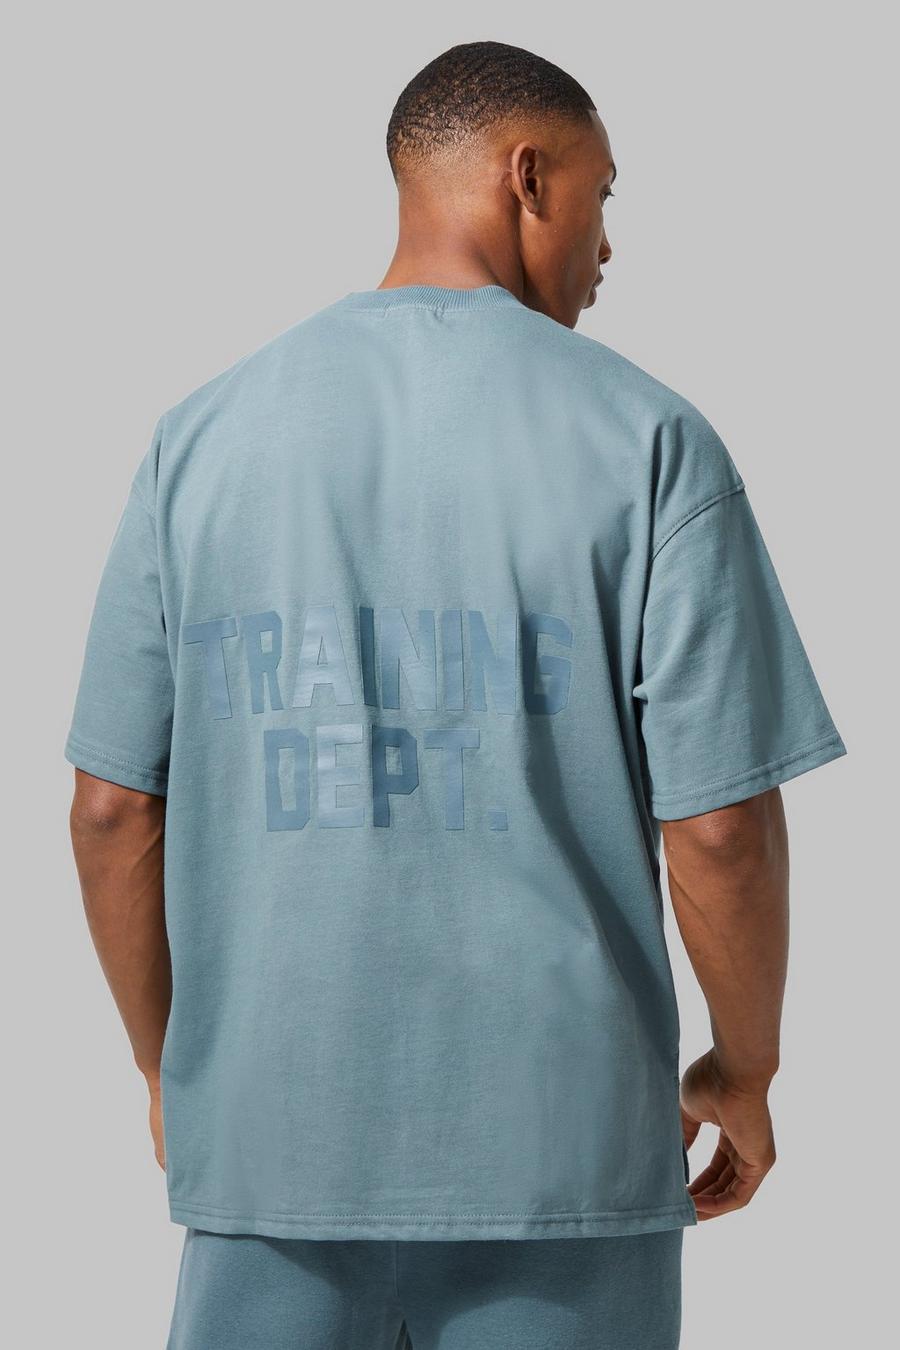 T-shirt oversize Active Training Dept, Slate blue image number 1